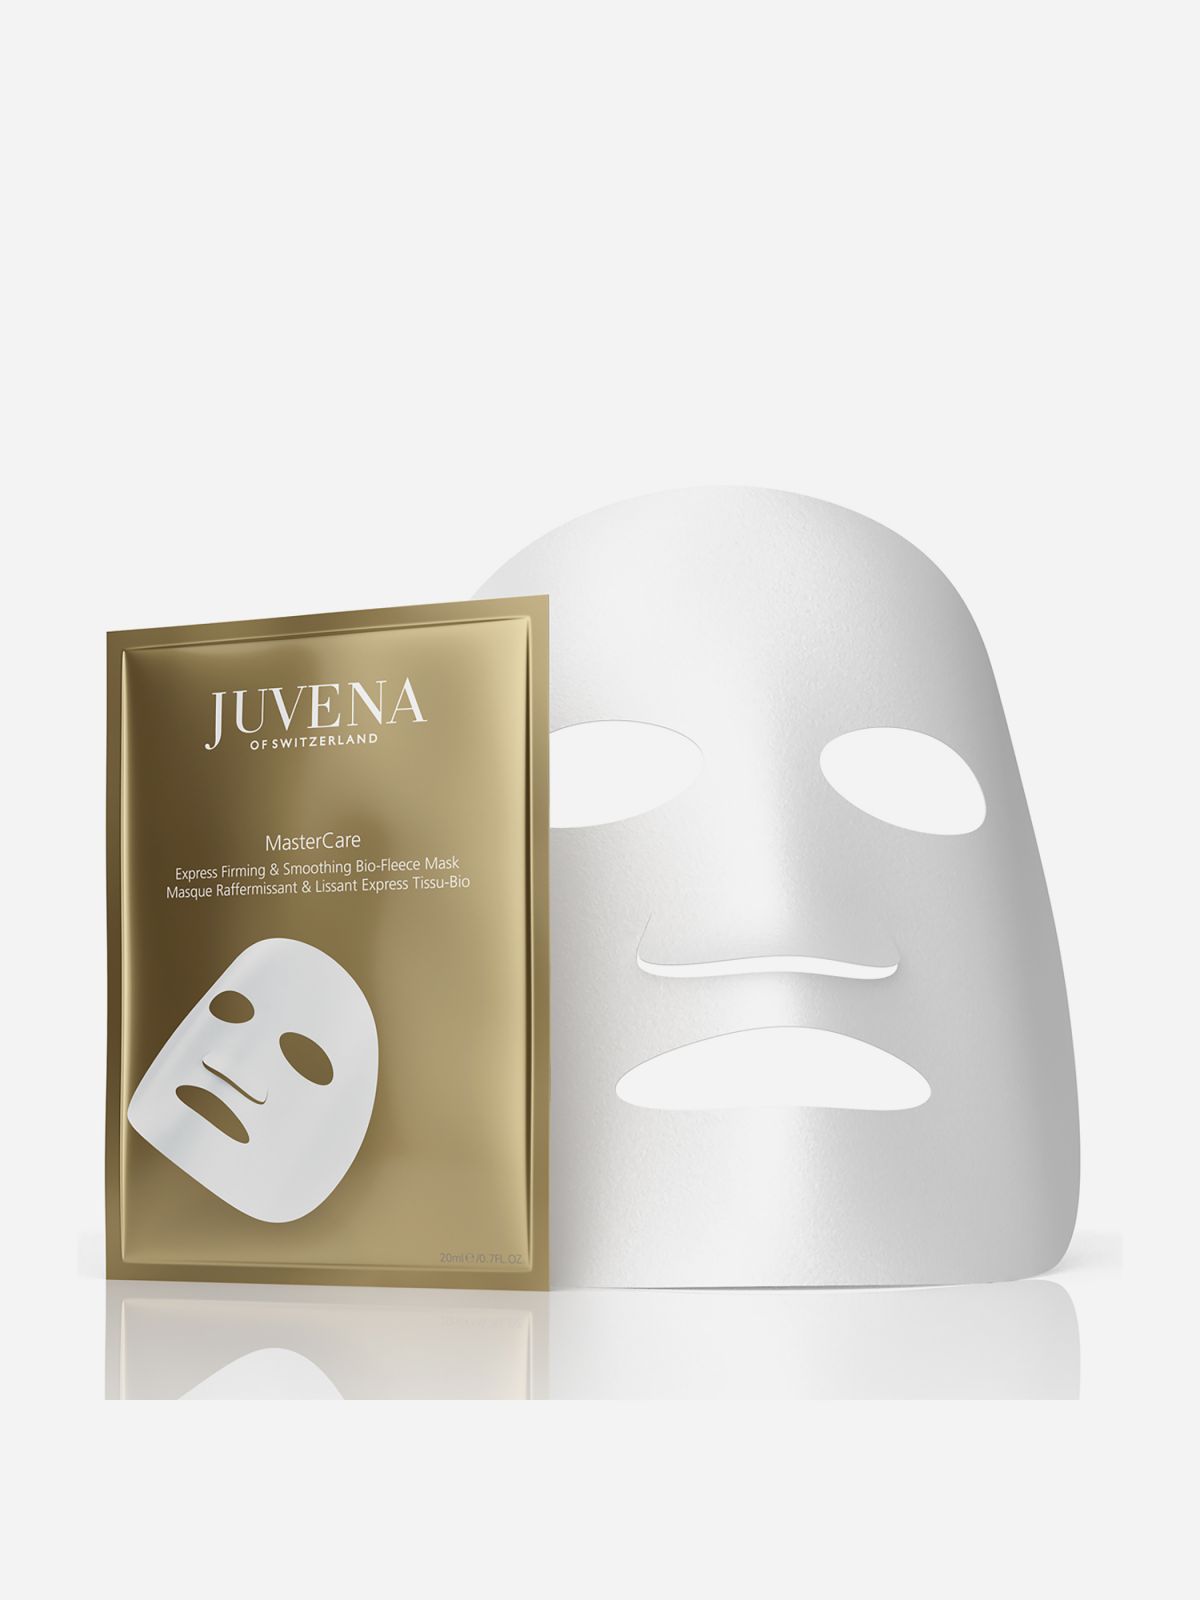  מסטרקאר מסכת בד ממצקת - 5 יח' MasterCare Express Firming & Smoothing Mask של JUVENA